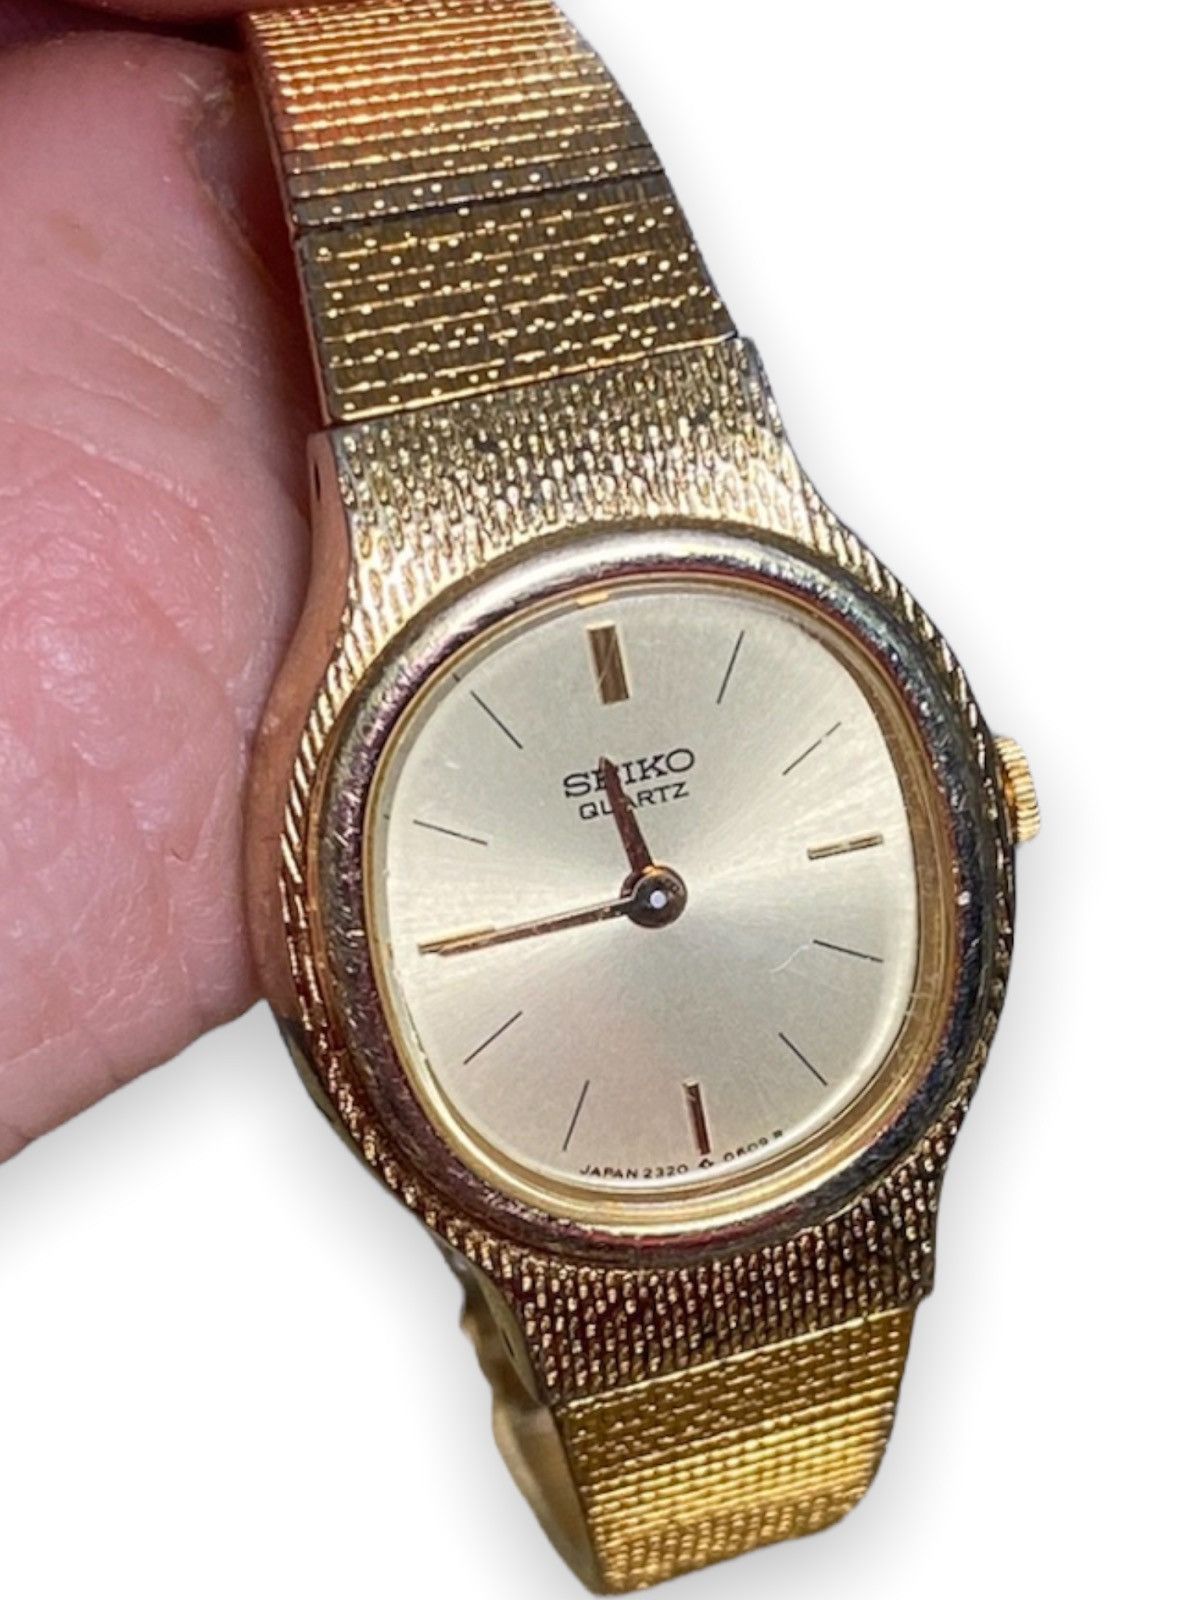 Seiko Seiko Quartz Watch Size ONE SIZE - 2 Preview